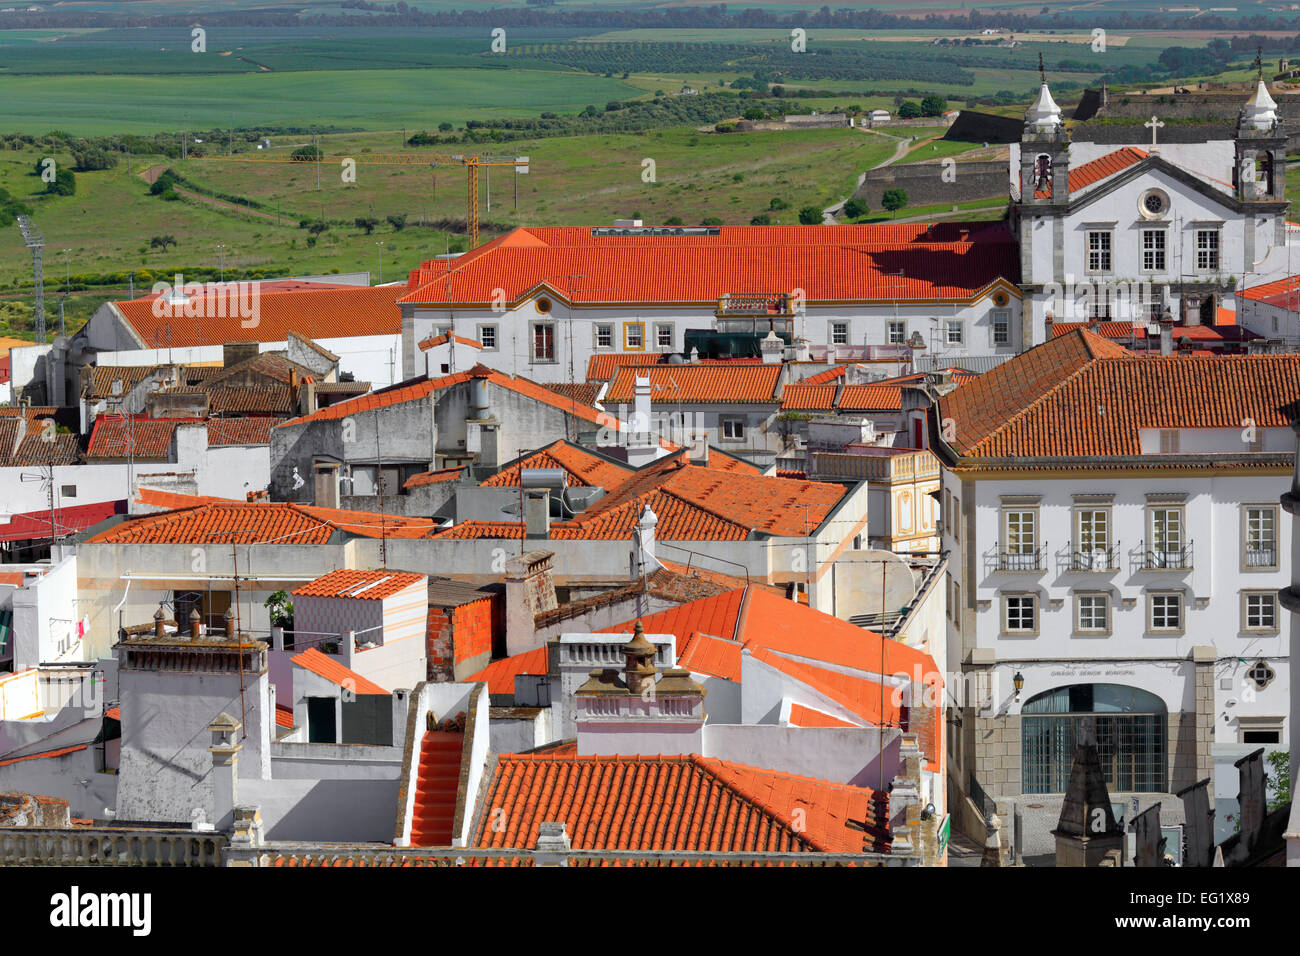 Cityscape, Elvas, Alentejo, Portugal Stock Photo